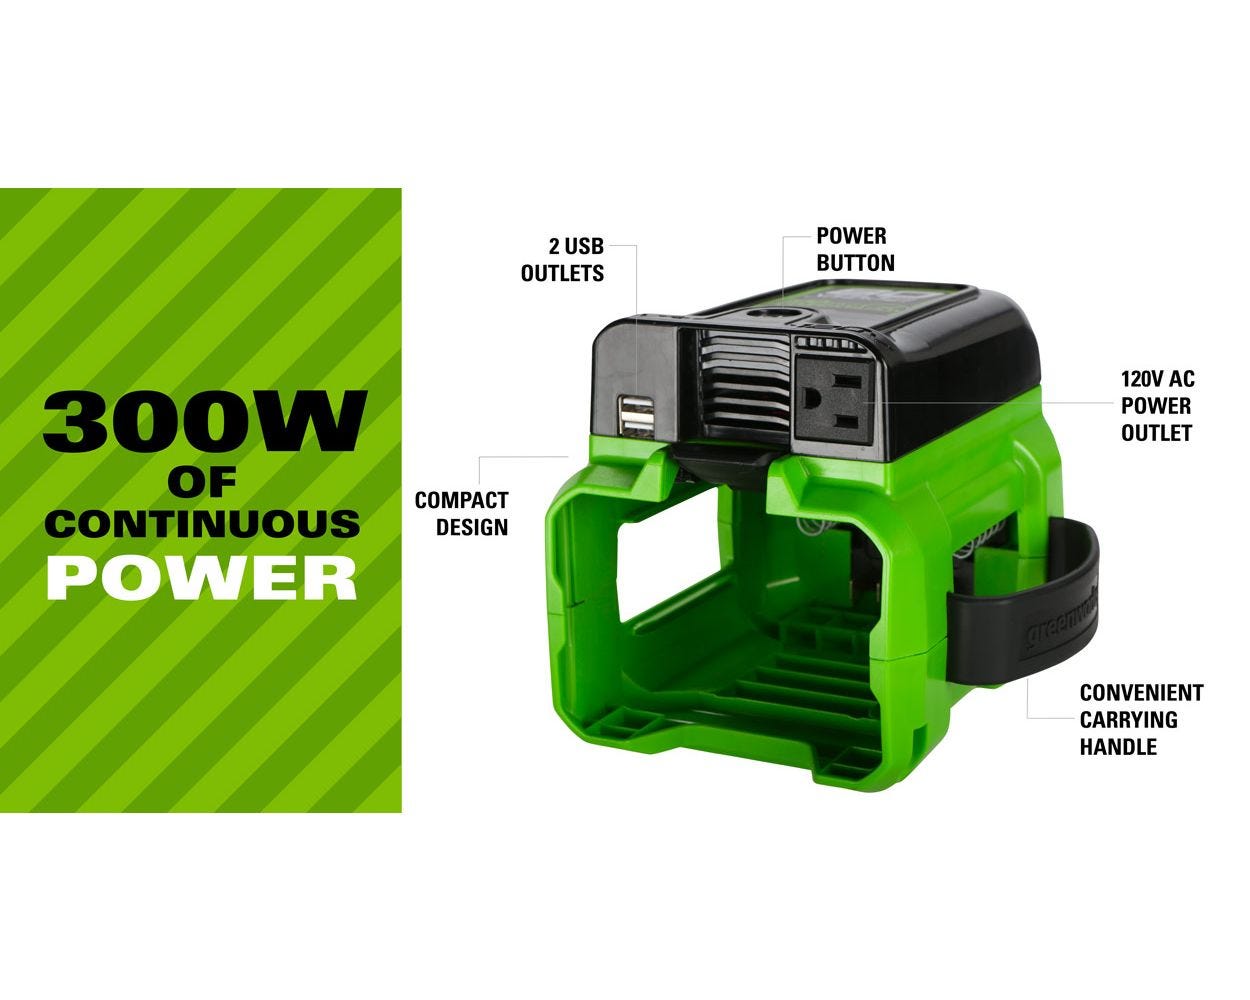 80V 300 Watt Power Inverter (Tool Only) | Greenworks Pro